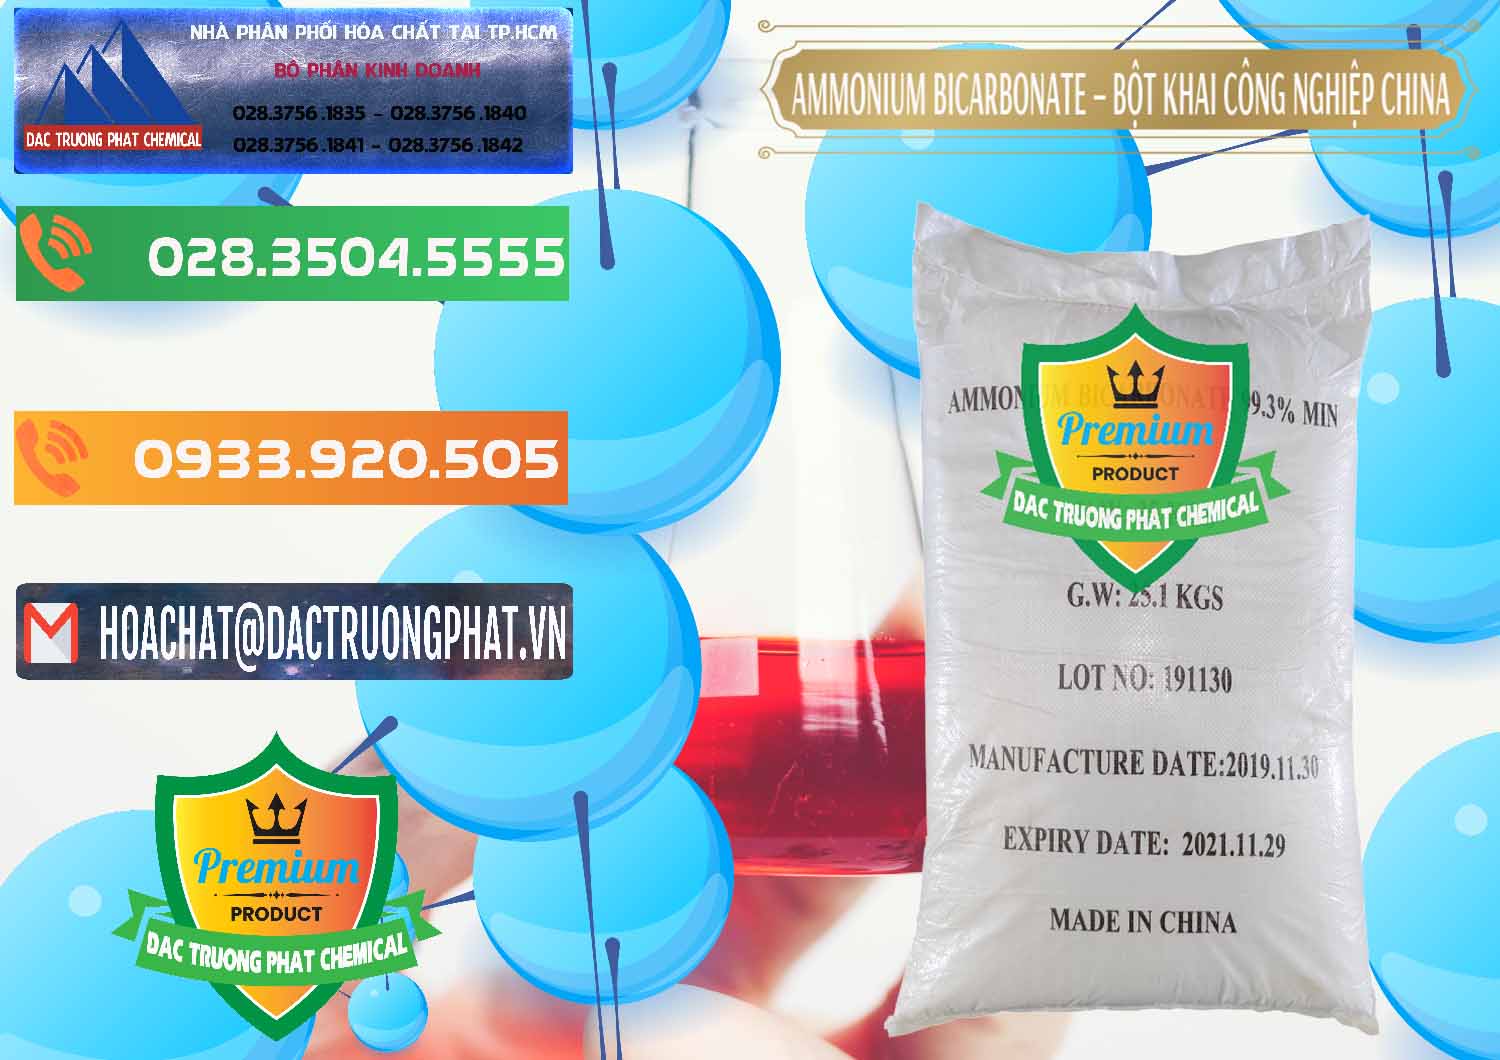 Chuyên cung ứng ( bán ) Ammonium Bicarbonate – Bột Khai Công Nghiệp Trung Quốc China - 0020 - Chuyên phân phối ( bán ) hóa chất tại TP.HCM - hoachatxulynuoc.com.vn